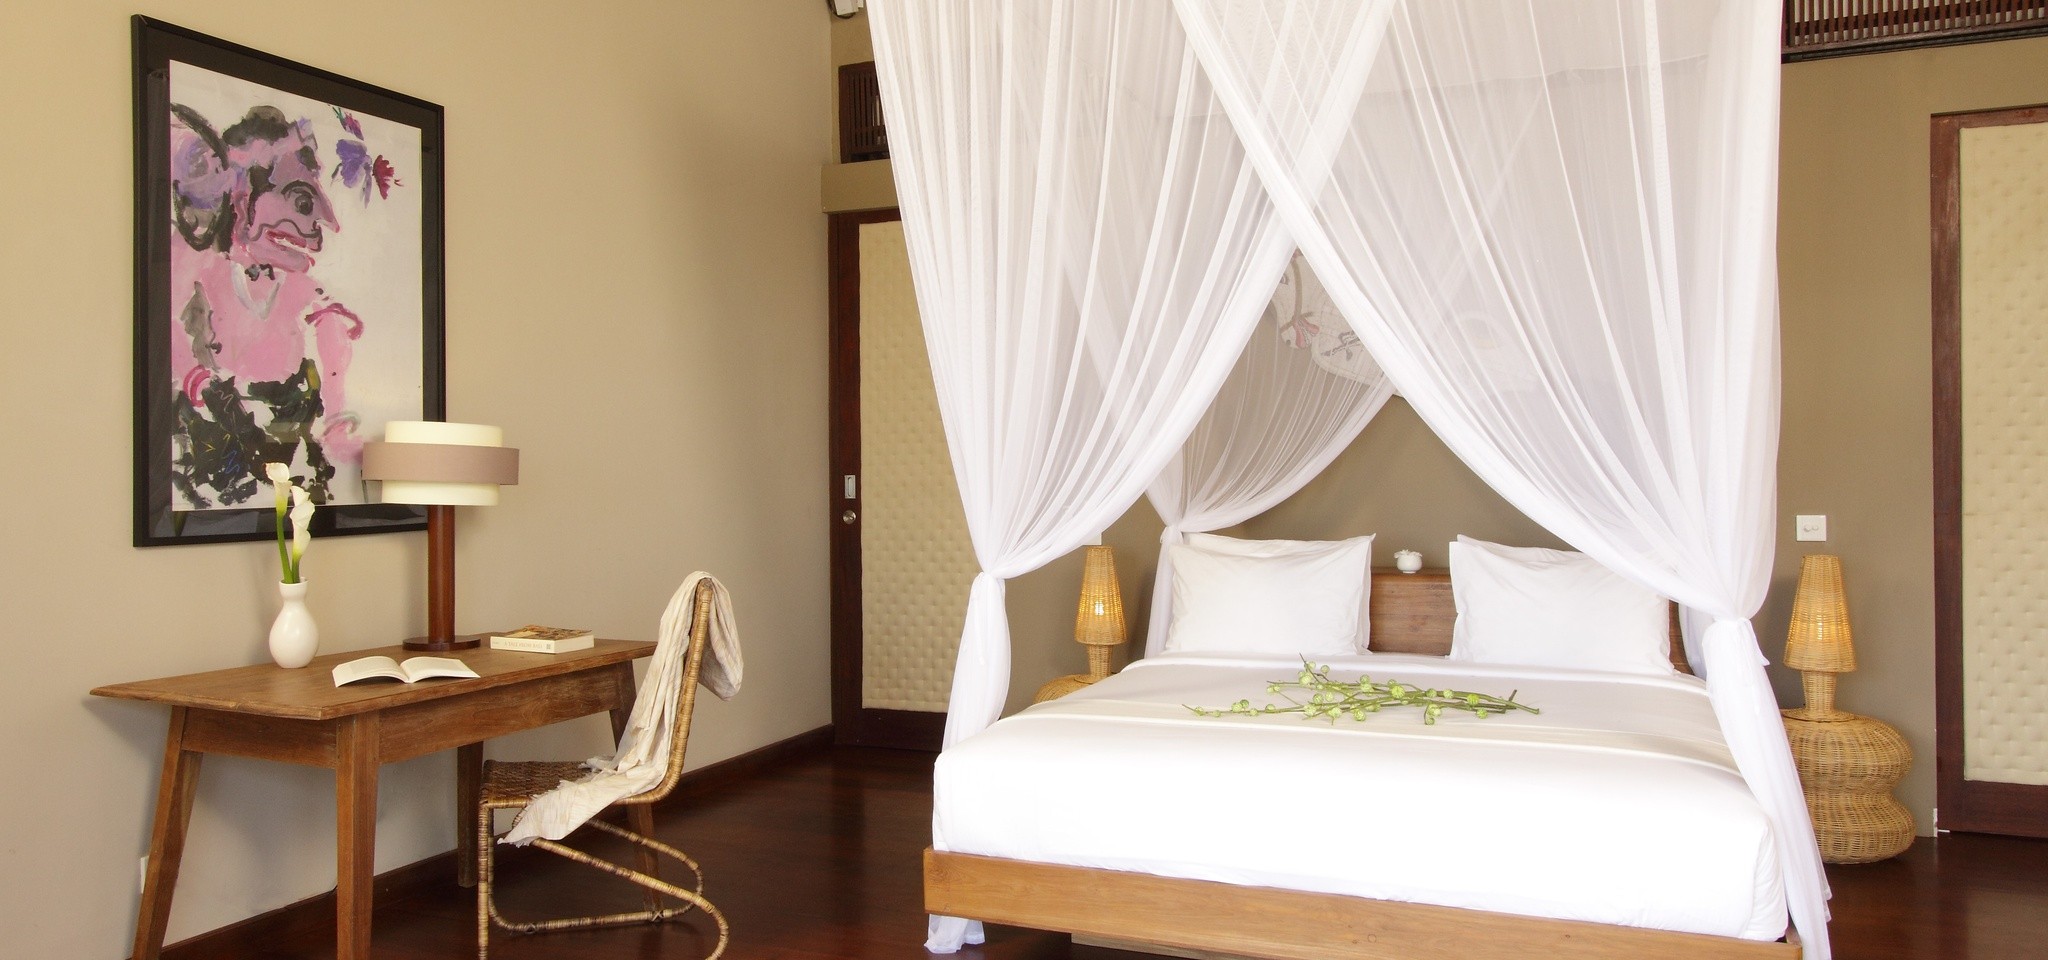 VillaMelissa Bedroom4 – Villa Melissa – Bali – Indonesia